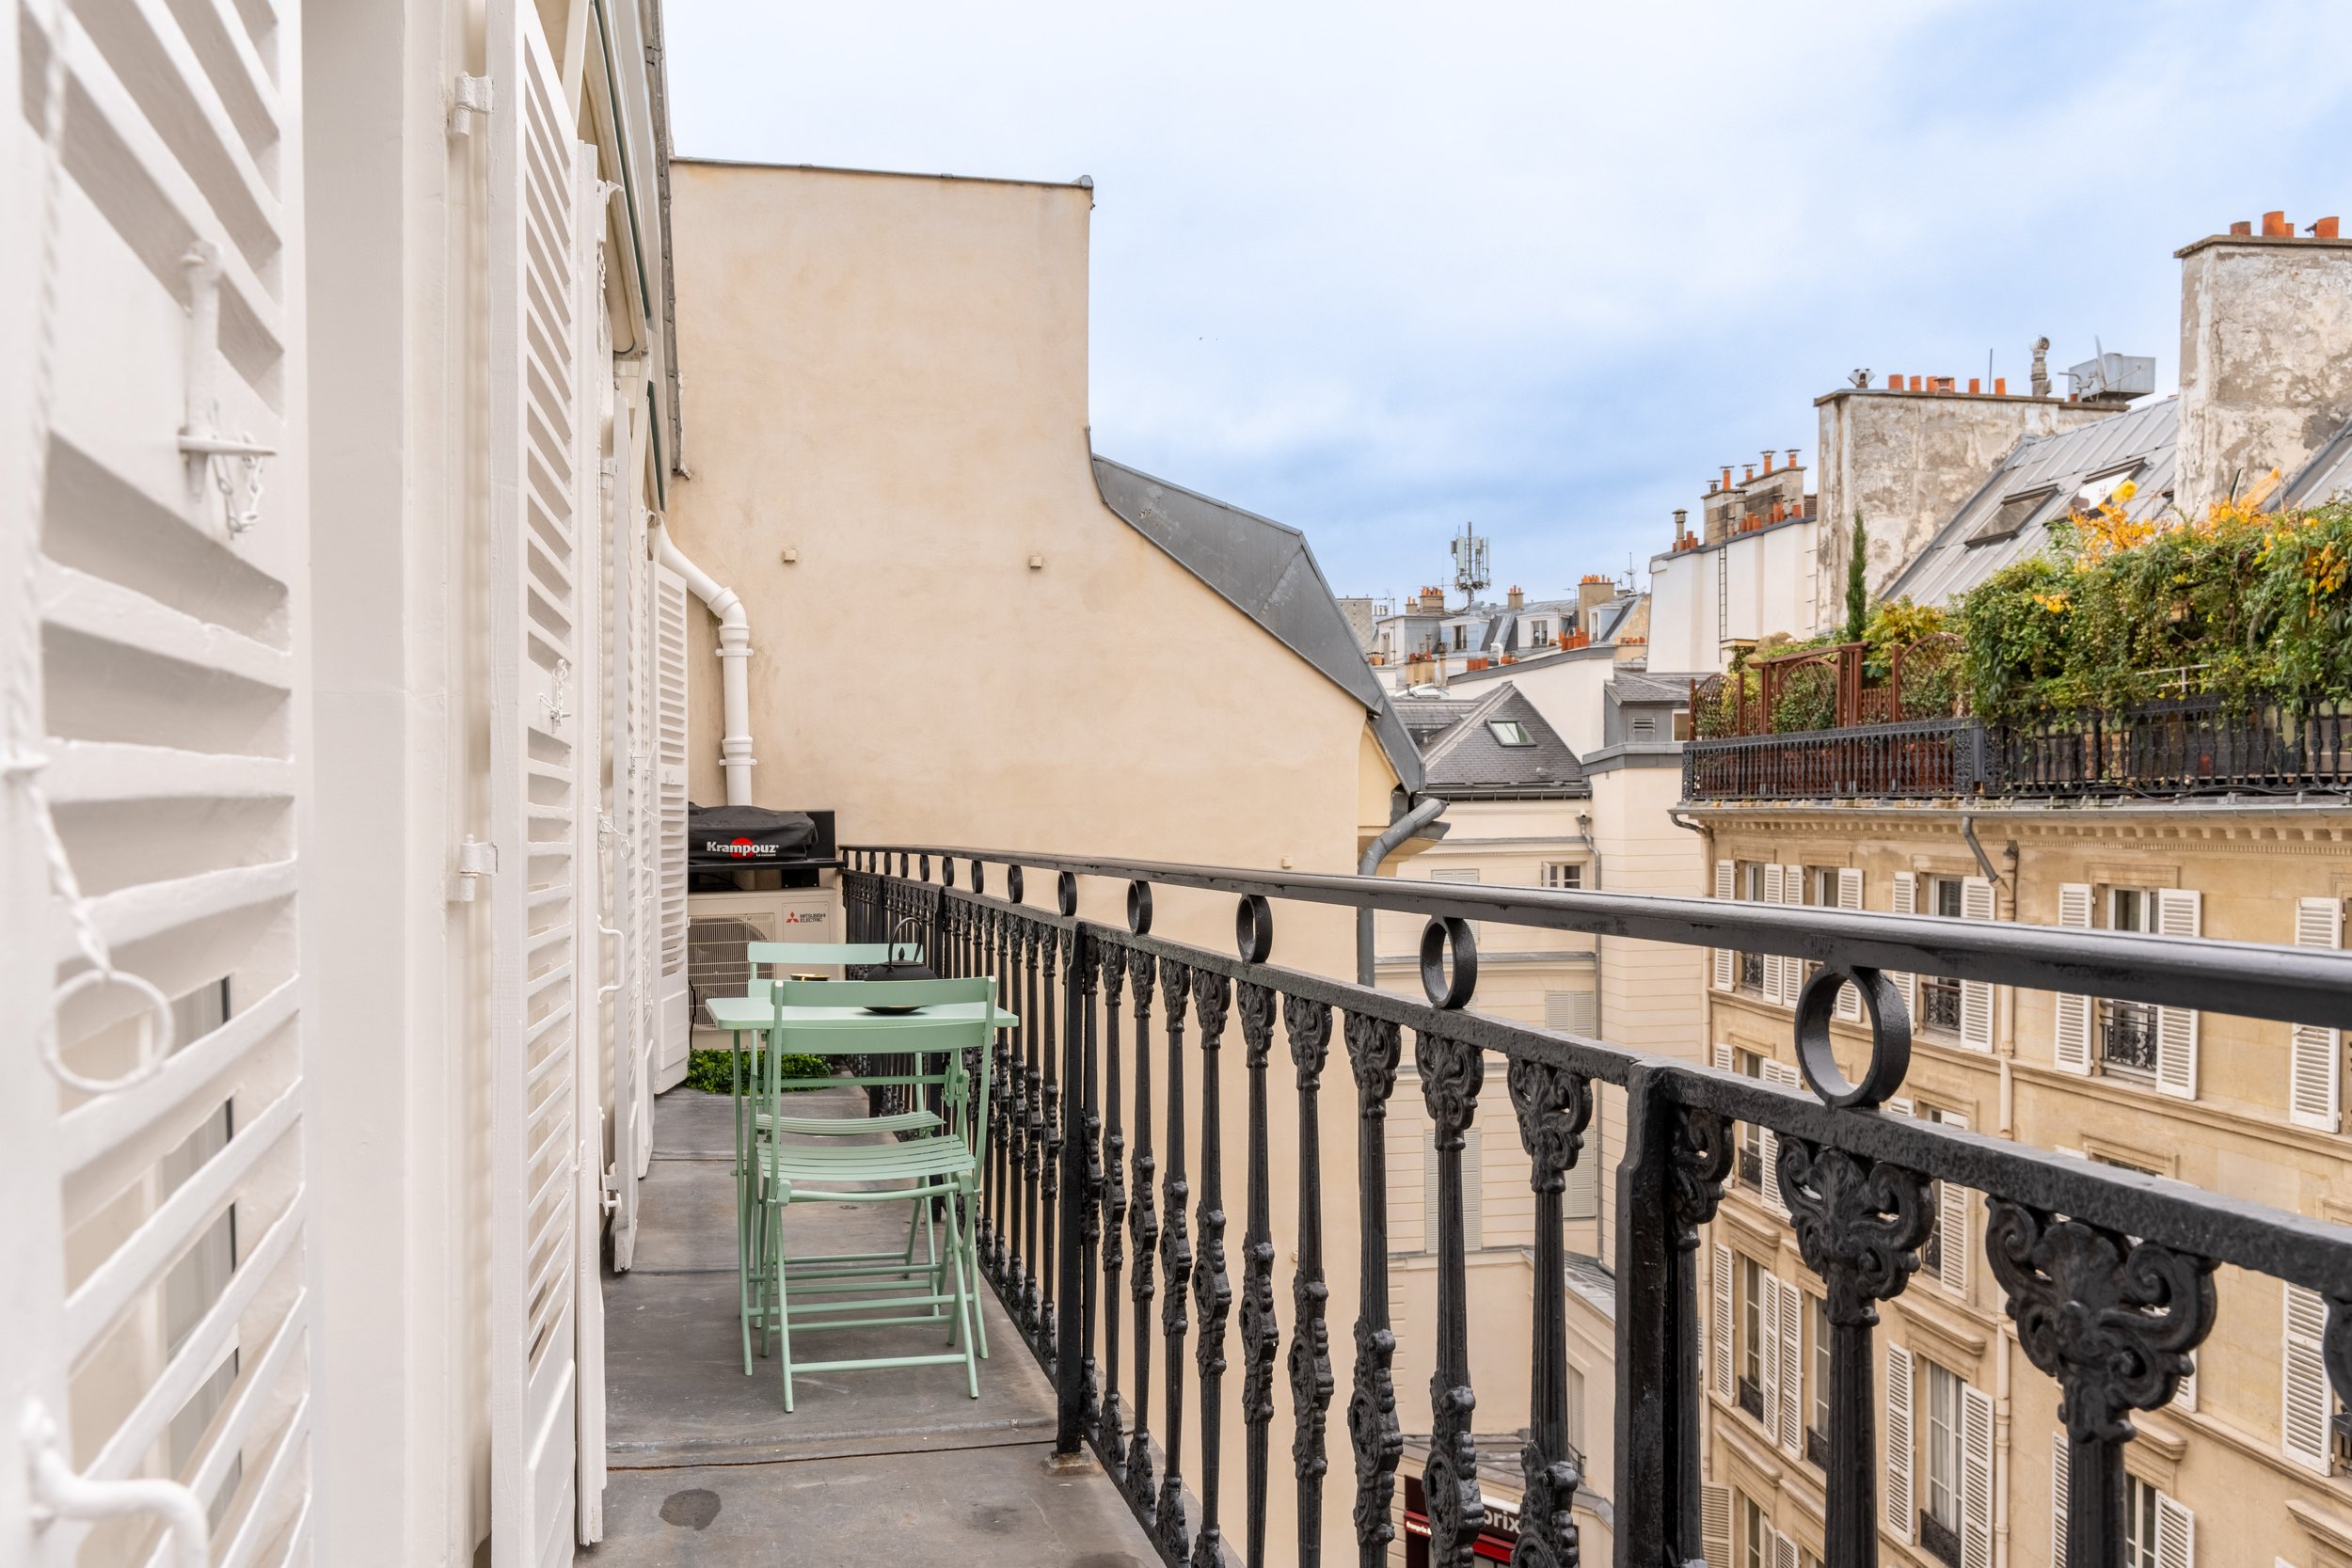 Exceptional apartment in the heart of Paris and Saint Germain des Prés